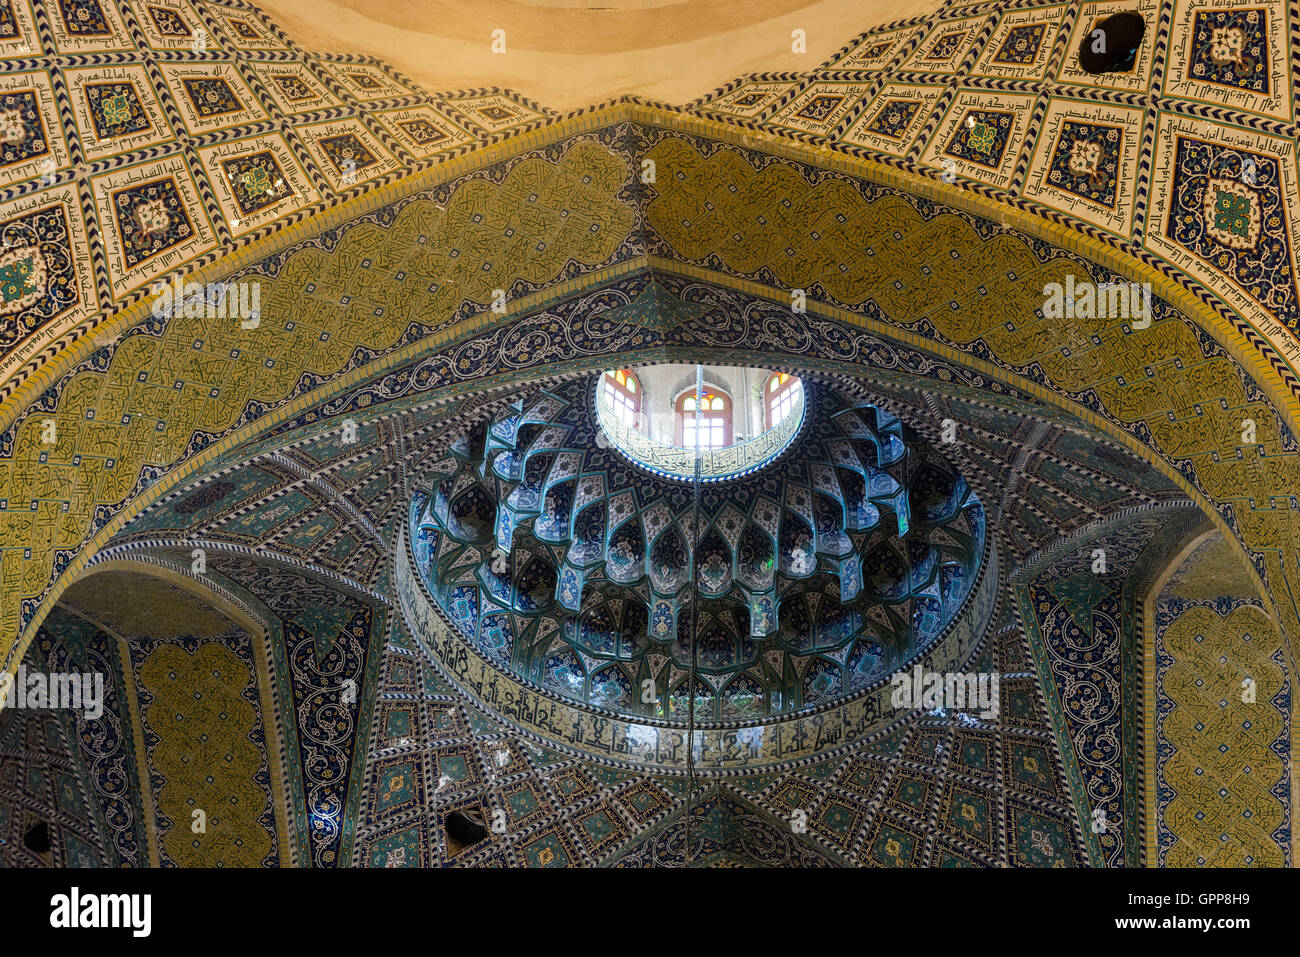 Qom, Emam Hasan Askari (Imam Hassan) Mosque, Dome Architecture Stock Photo